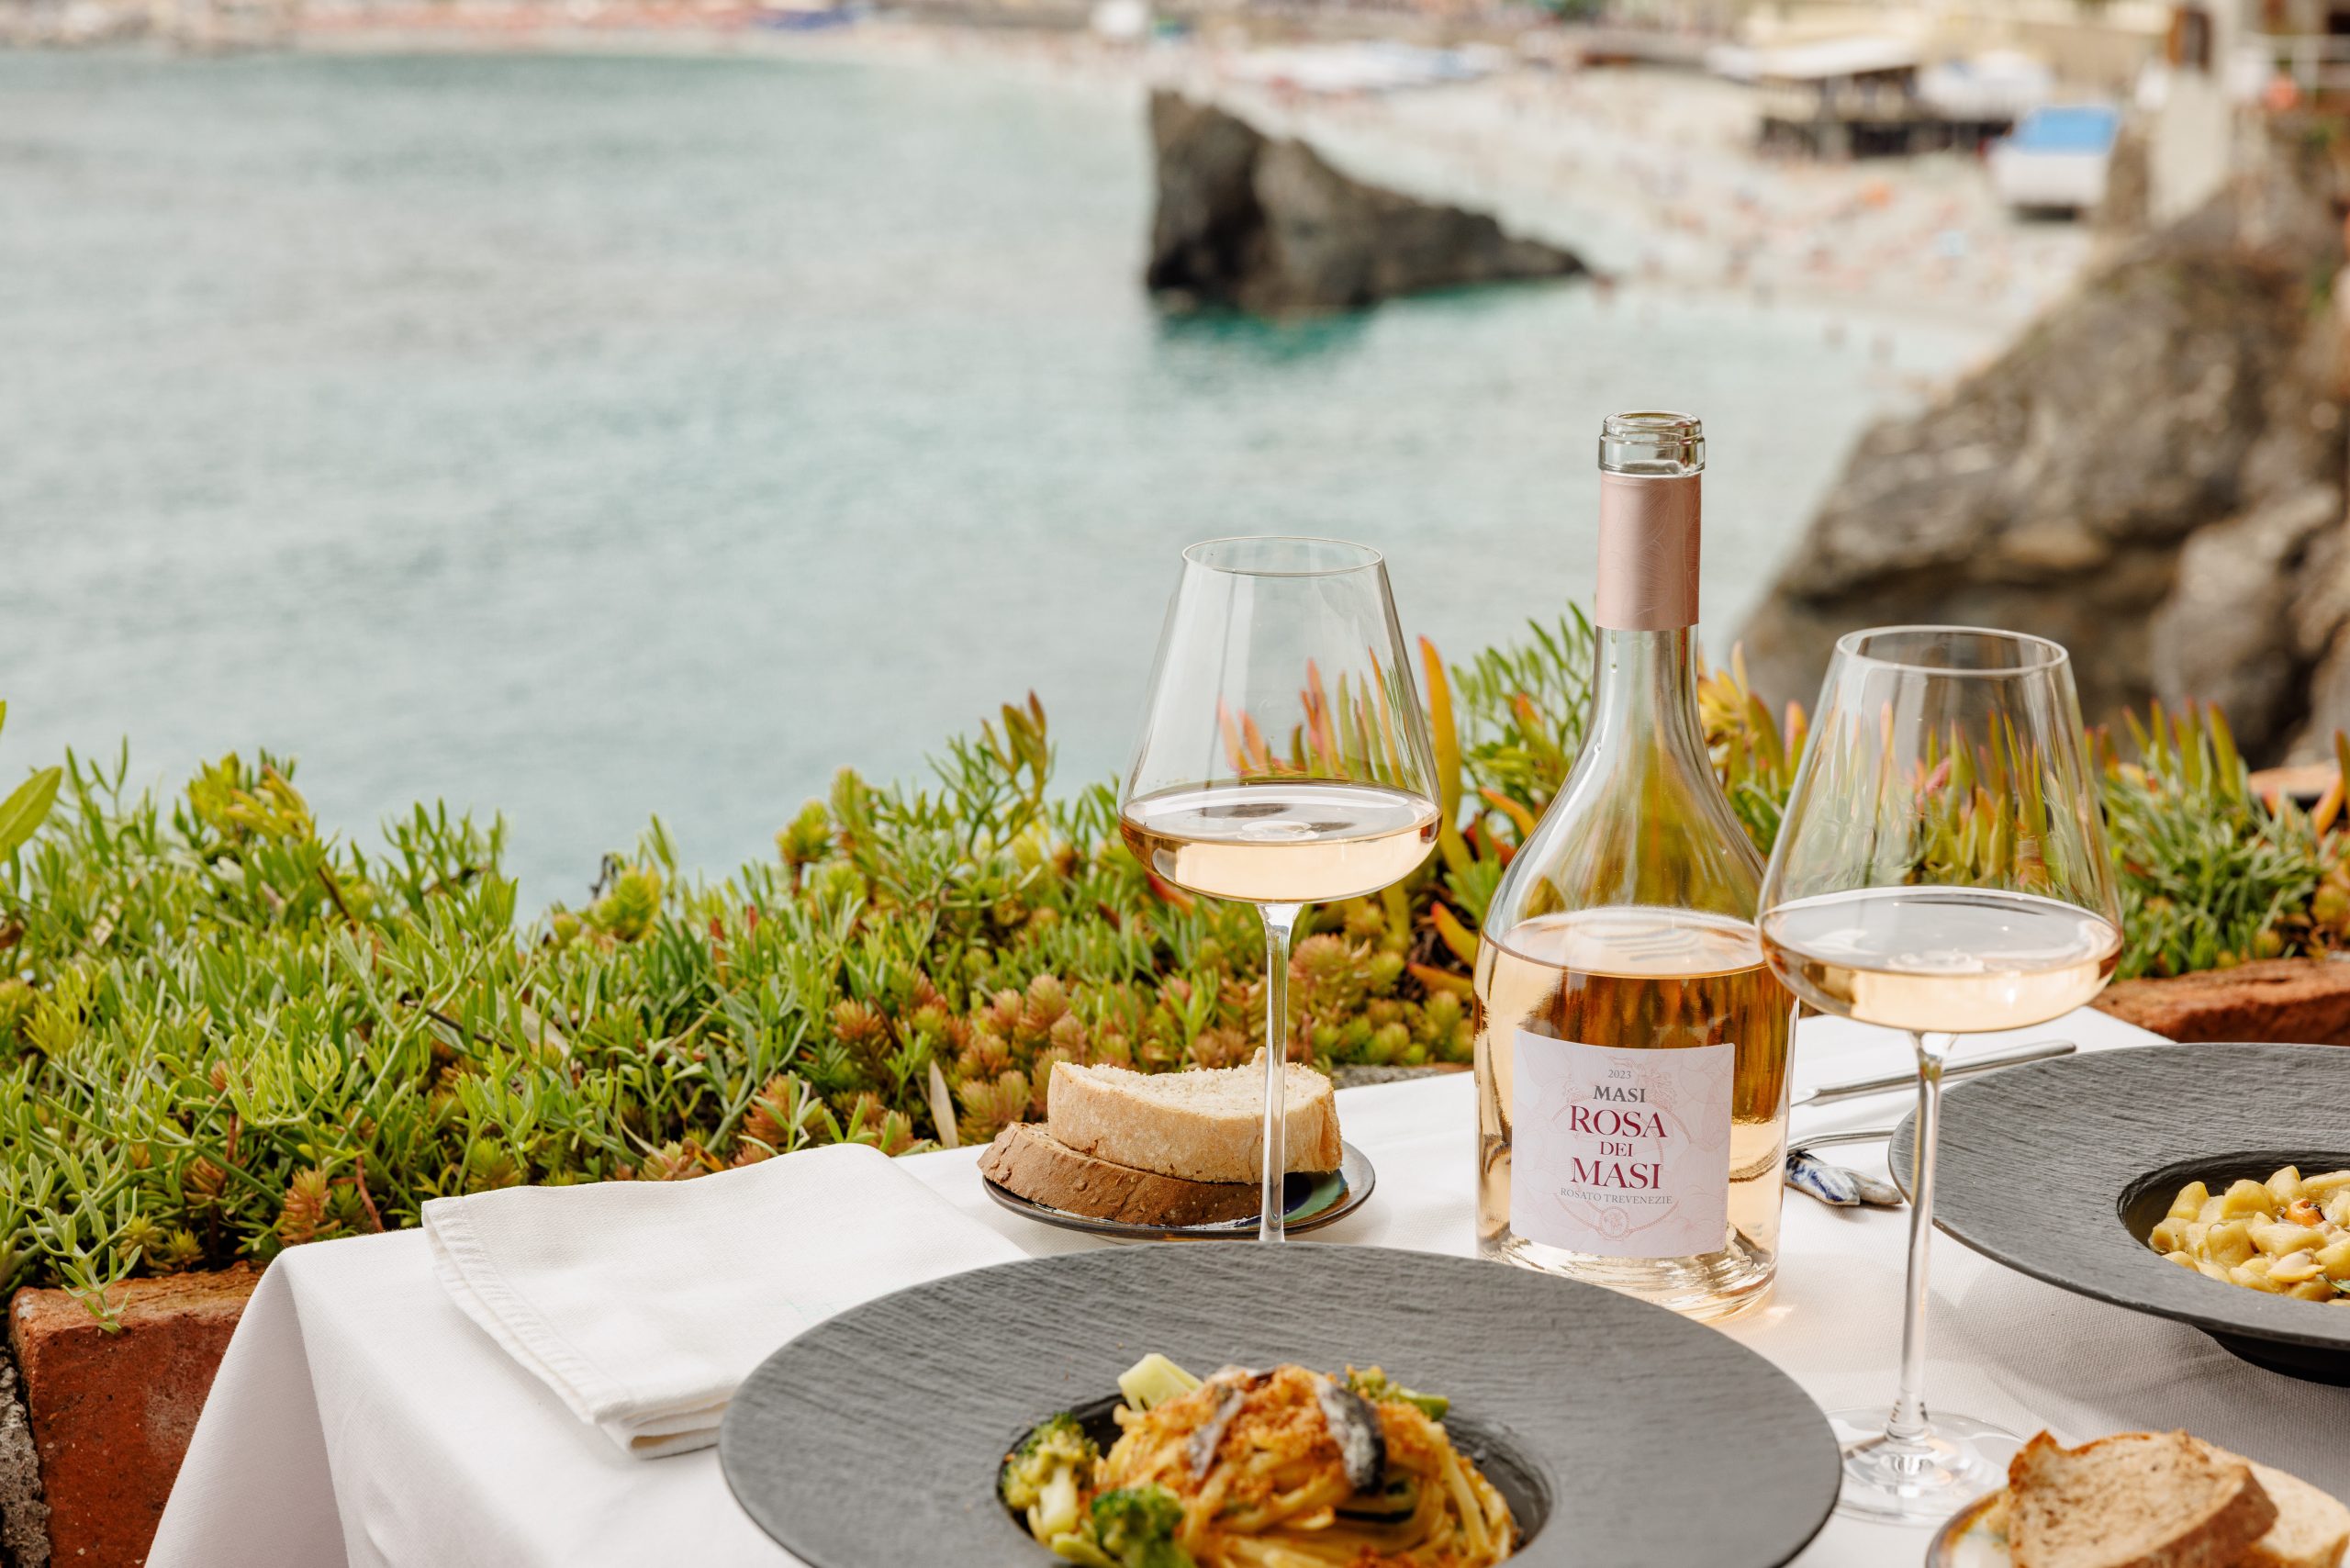 湾を眺めながら食事をするためのテーブルがセッティングされている。その上にはローザ・デイ・マッシのボトル、ワイングラス2つ、パン、パスタ皿、ナプキンが置かれている。